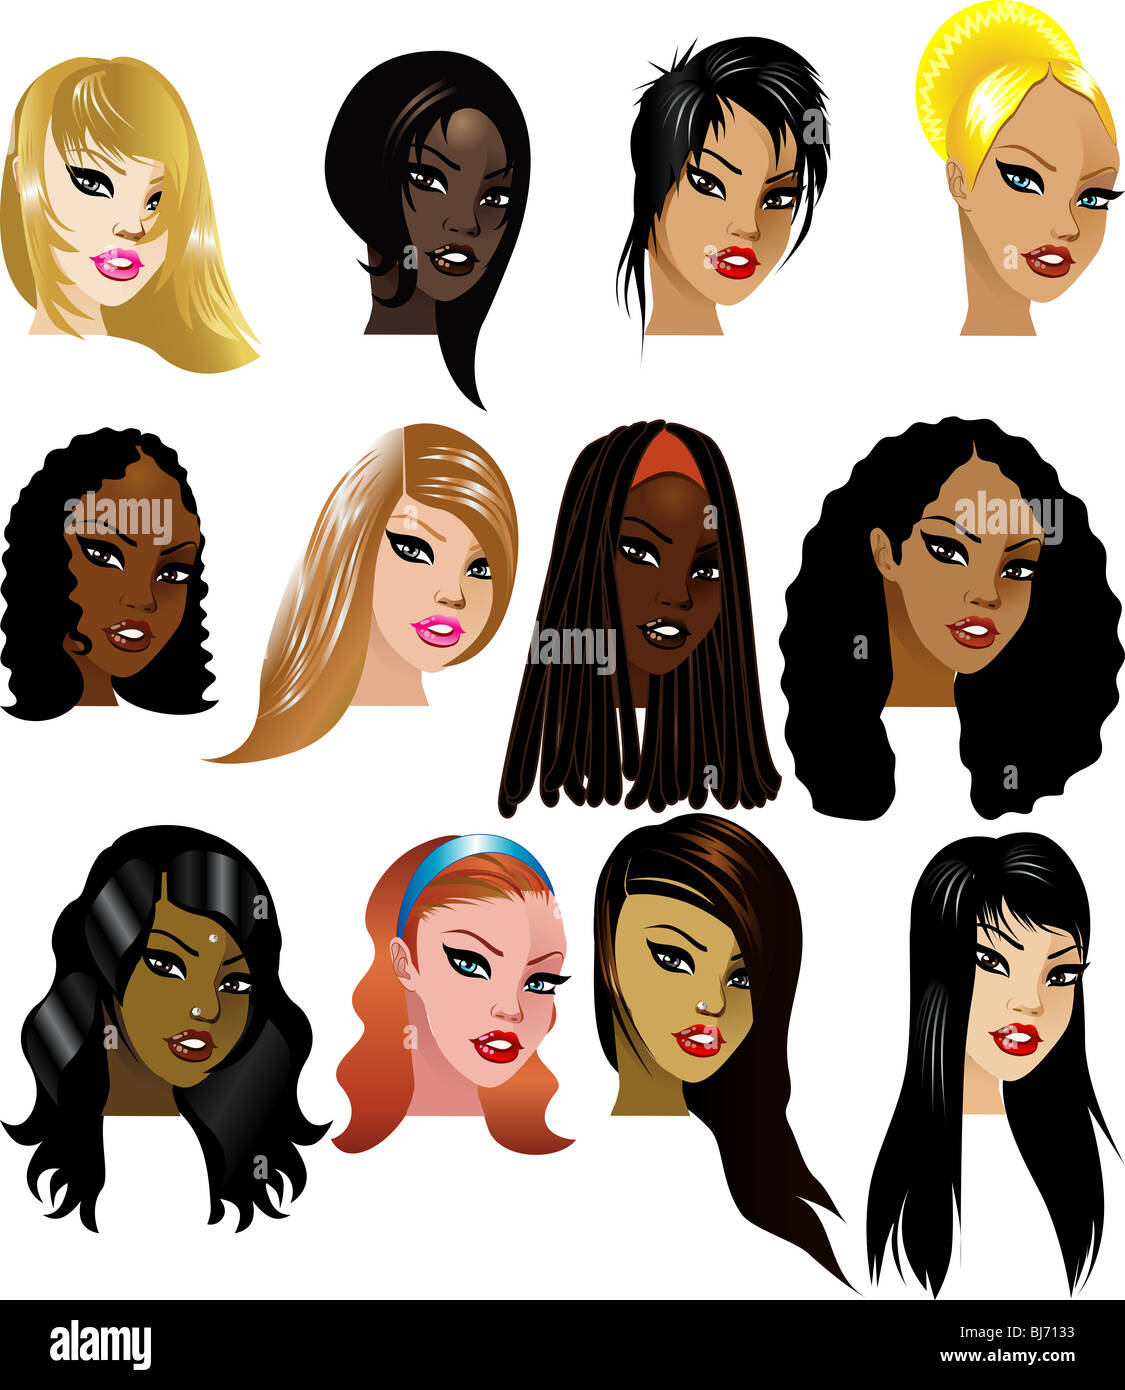 Illustrazione Vettoriale di 12 donne facce 3. Ottimo per gli avatar, trucco, i toni della pelle o dei capelli stili di donne. Foto Stock